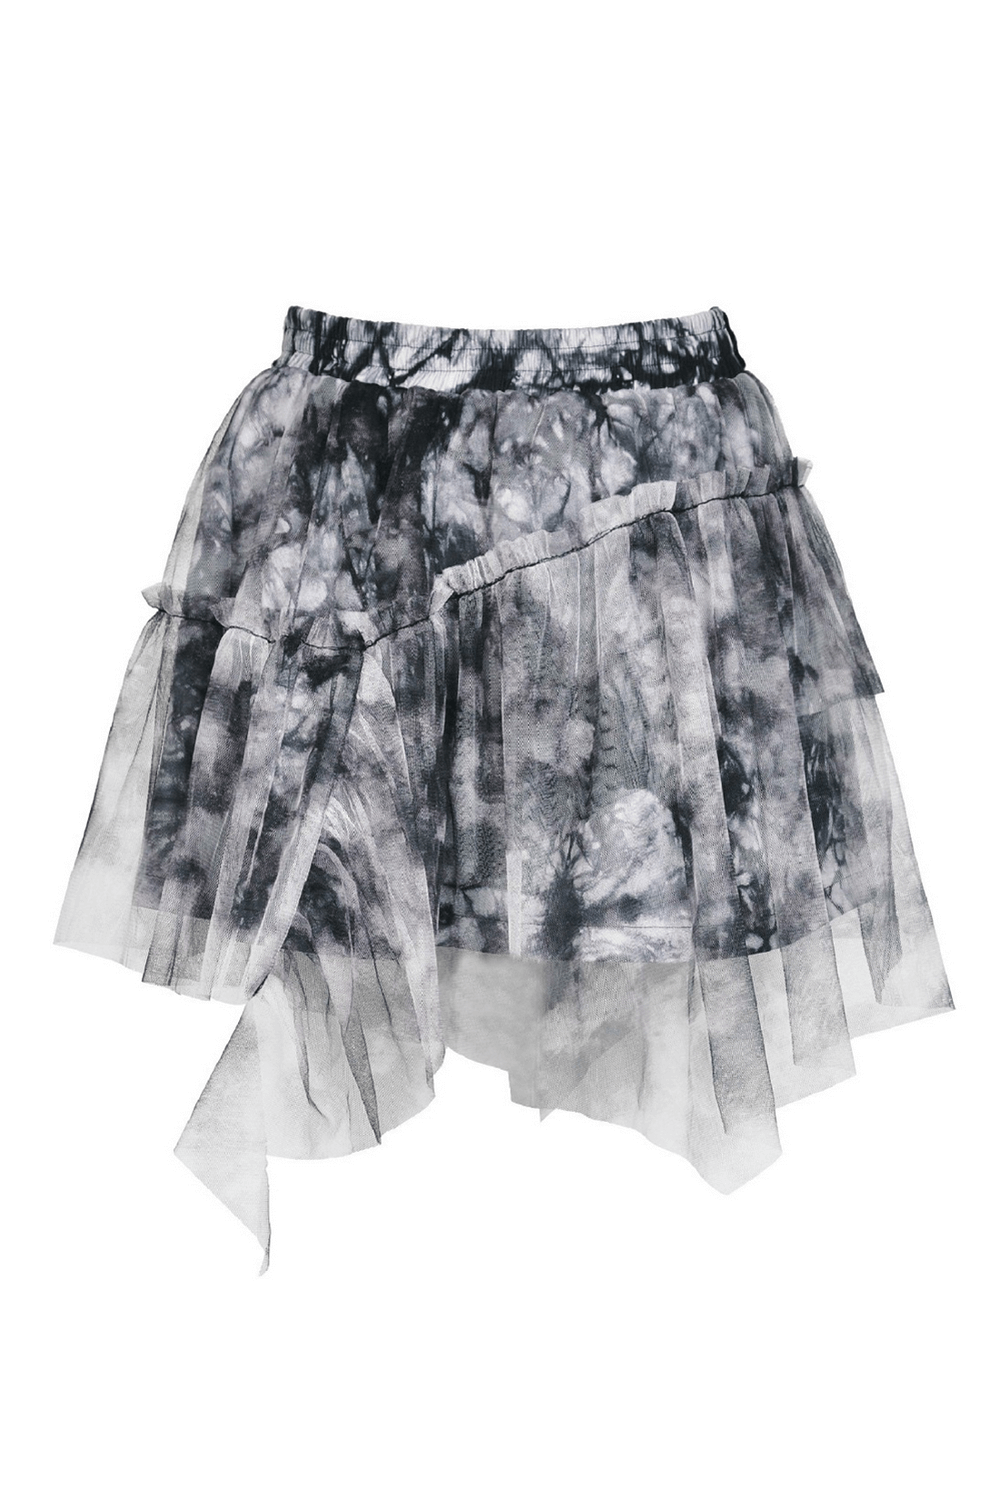 Chic Marble Print Skirt for Effortless Elegance